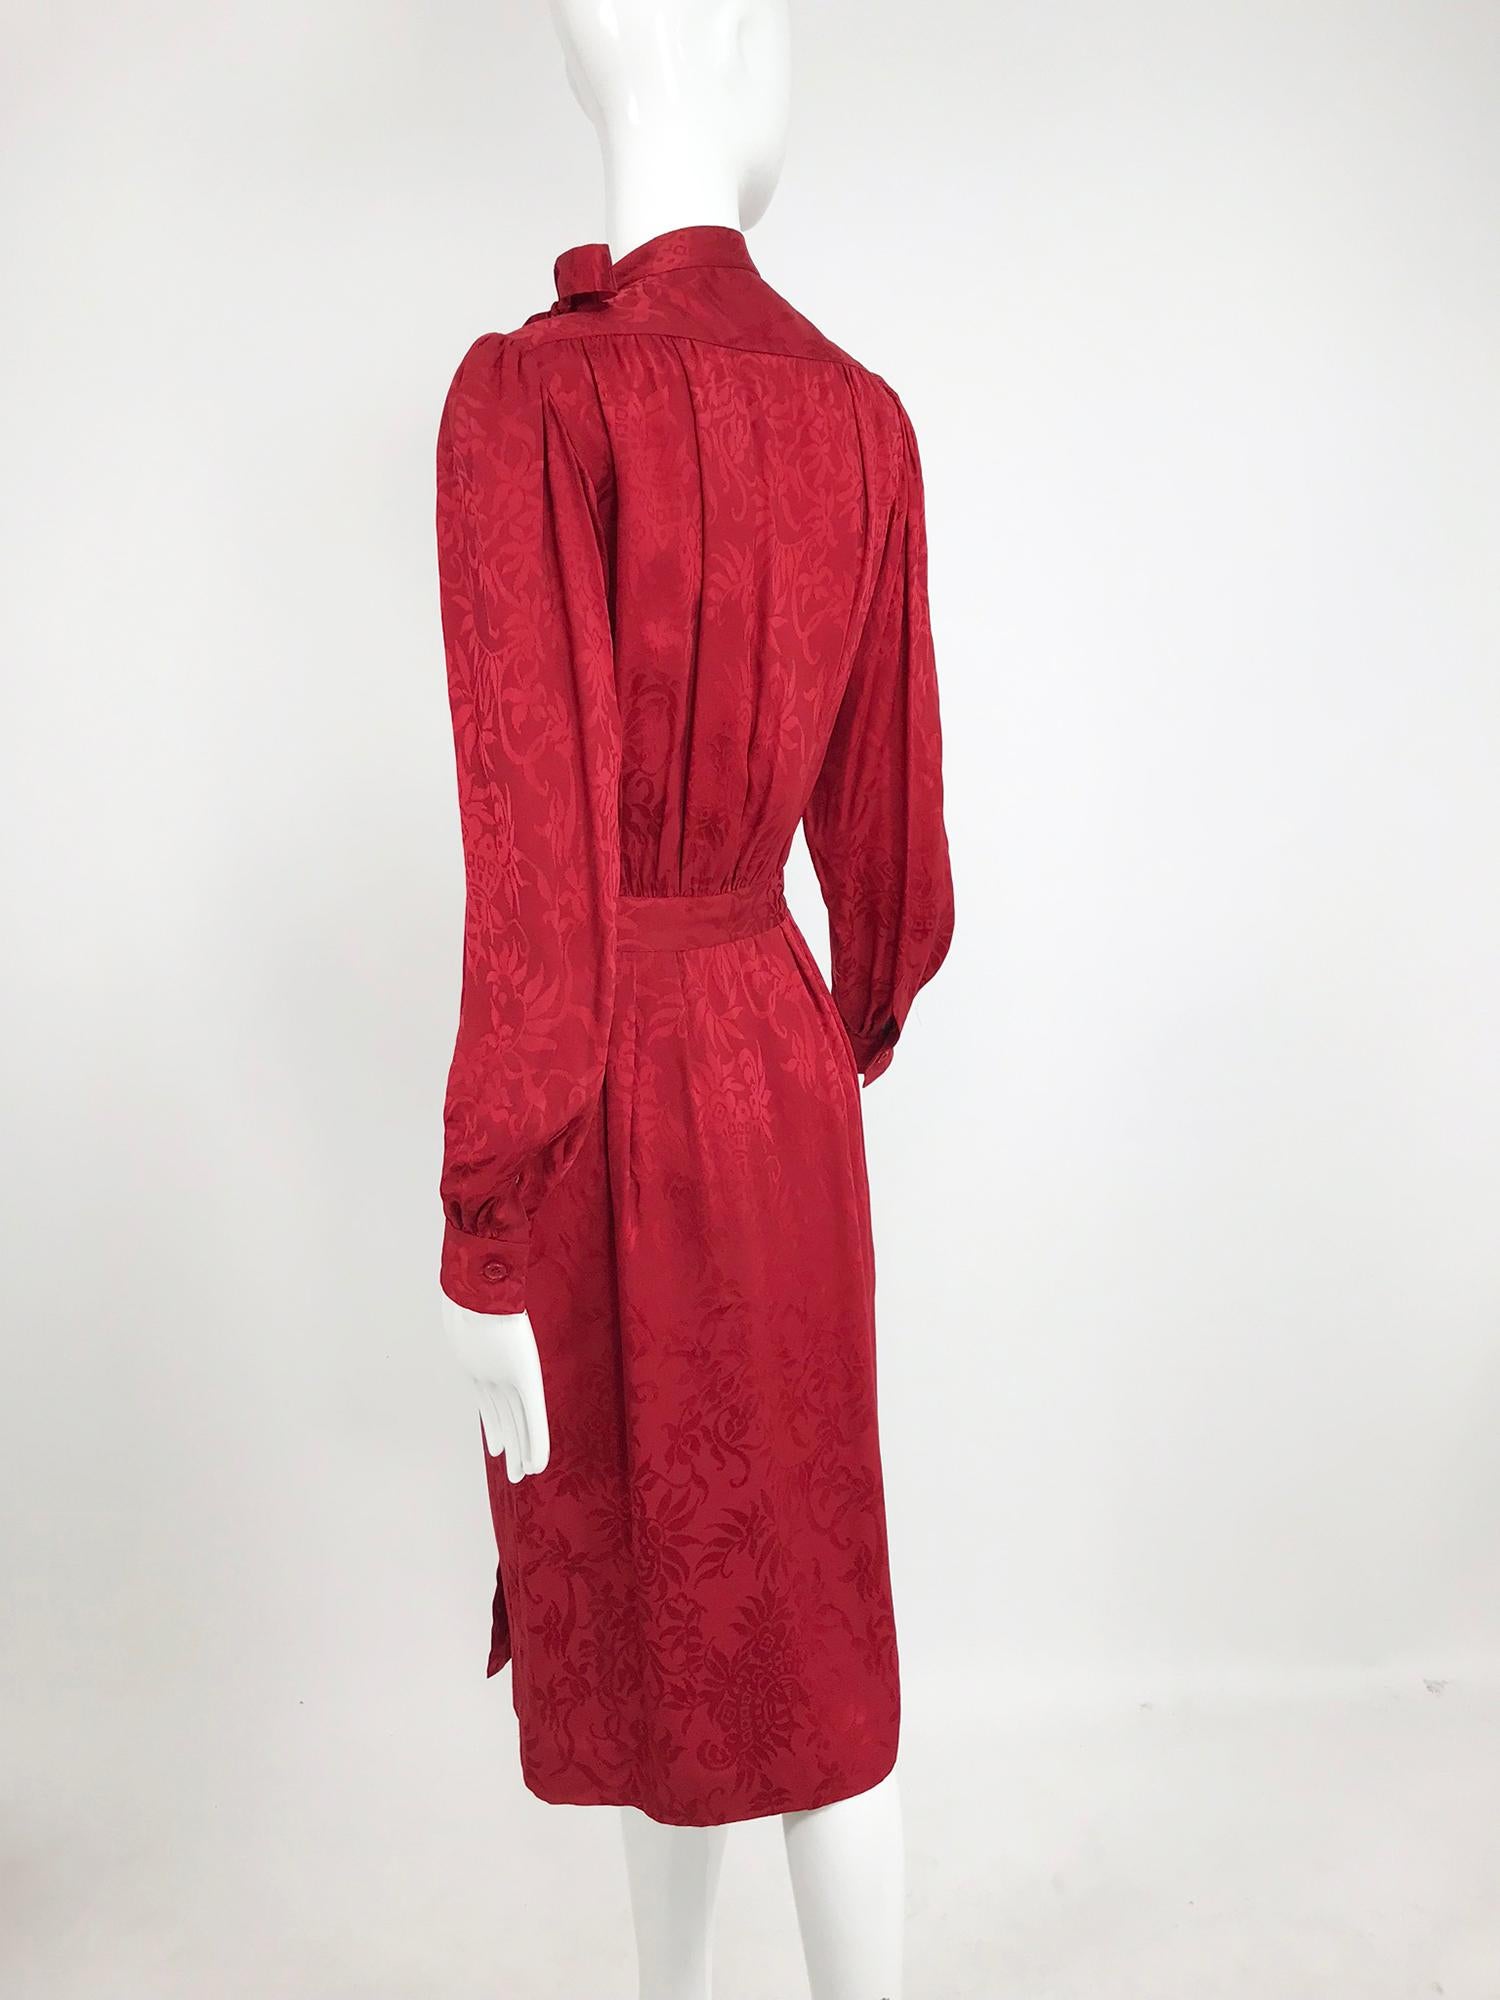 Yves Saint Laurent - Robe en jacquard de soie rouge avec nœud papillon, années 1970 9